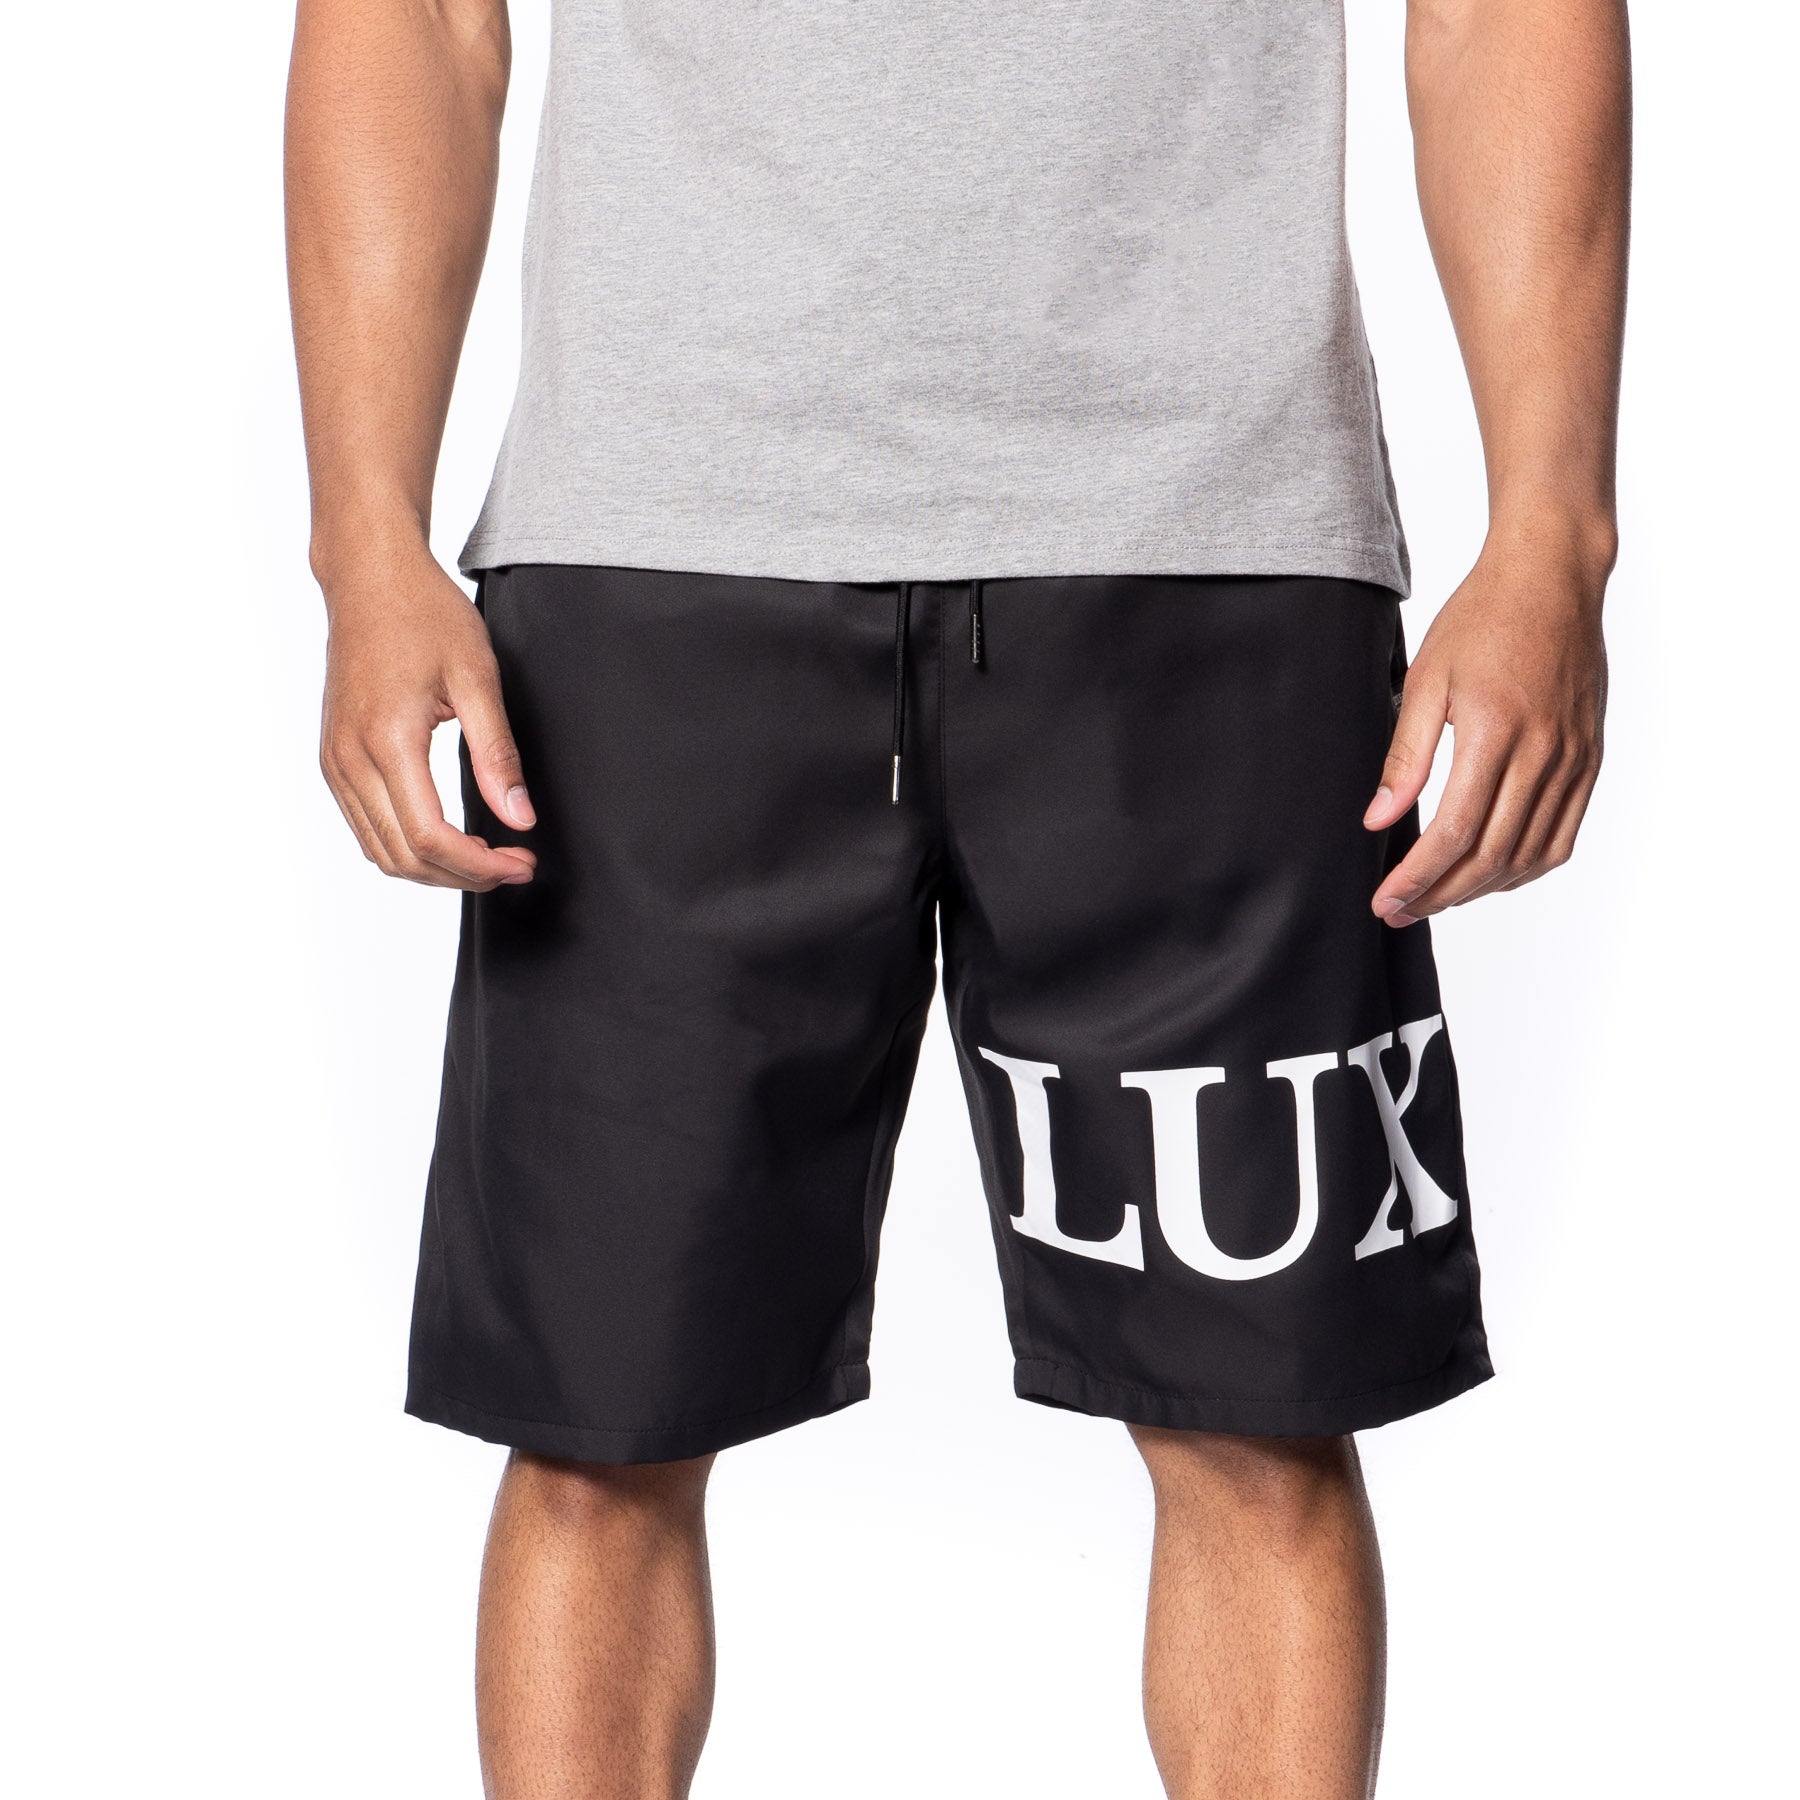 Titus Premier Crew Socks – Titus Athletic Brand